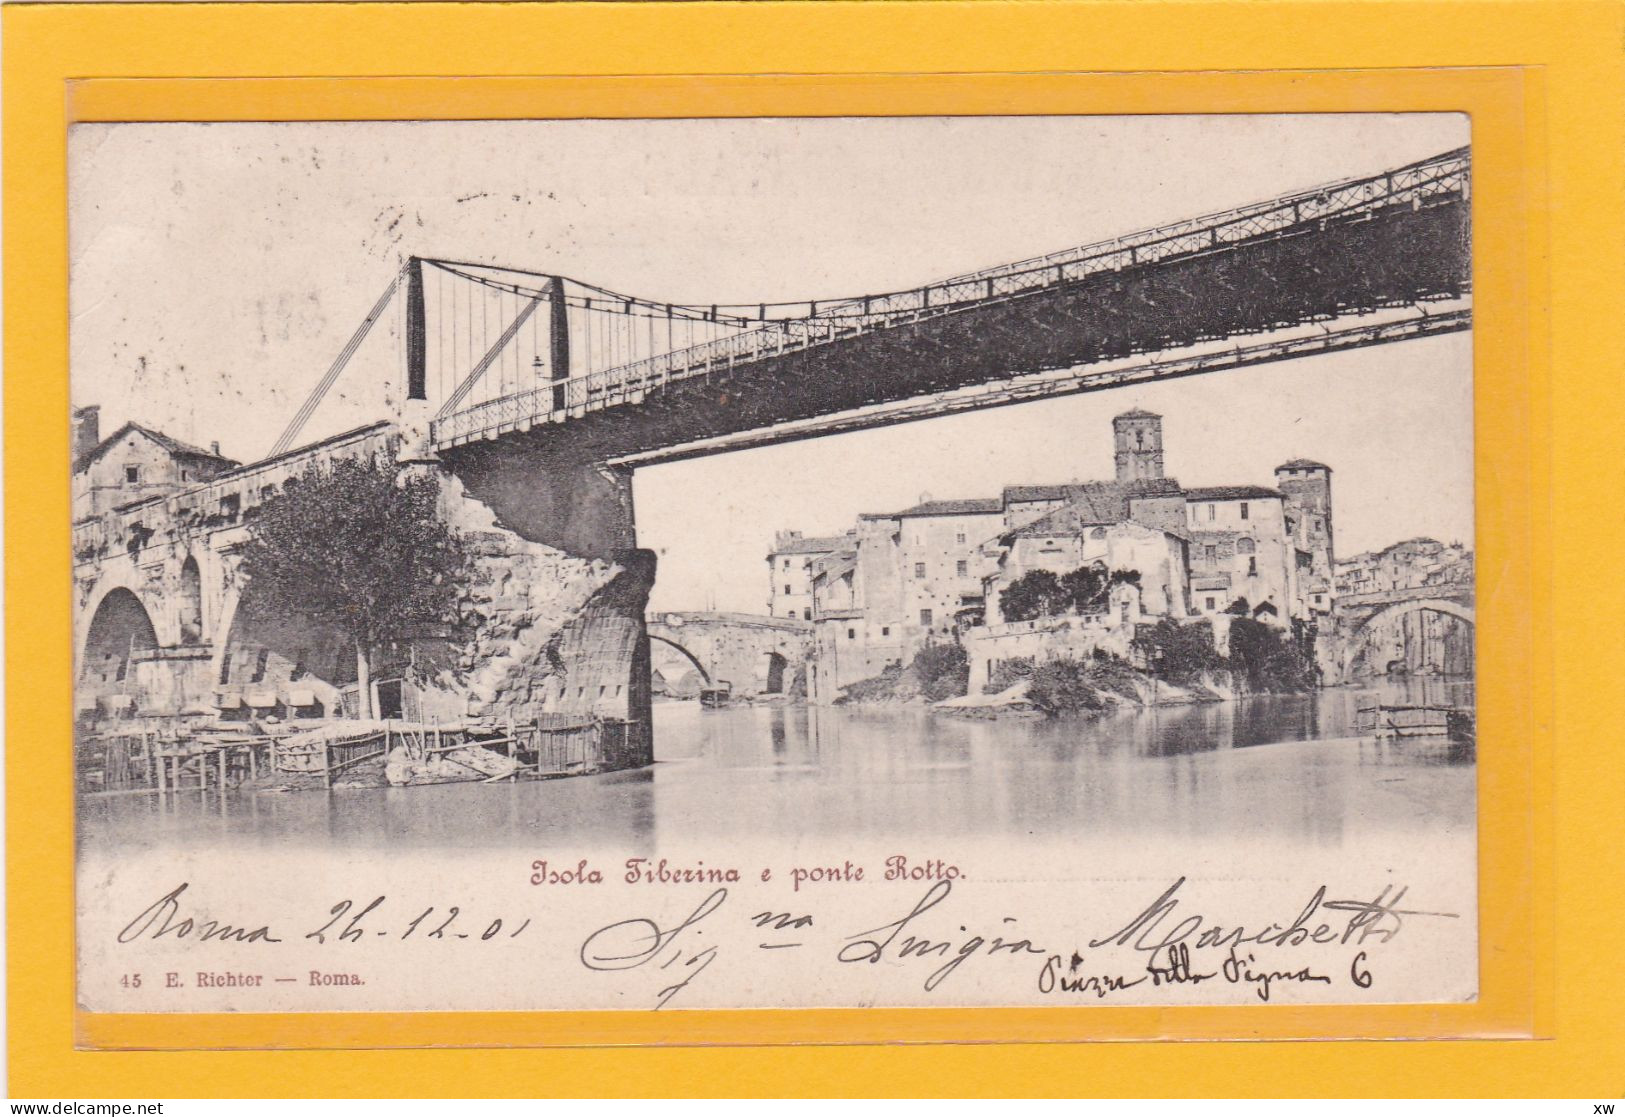 ITALIE - LAZIO - ROMA - ISOLA TIBERINA - E Ponte Rotto - A 2731 - Bruggen